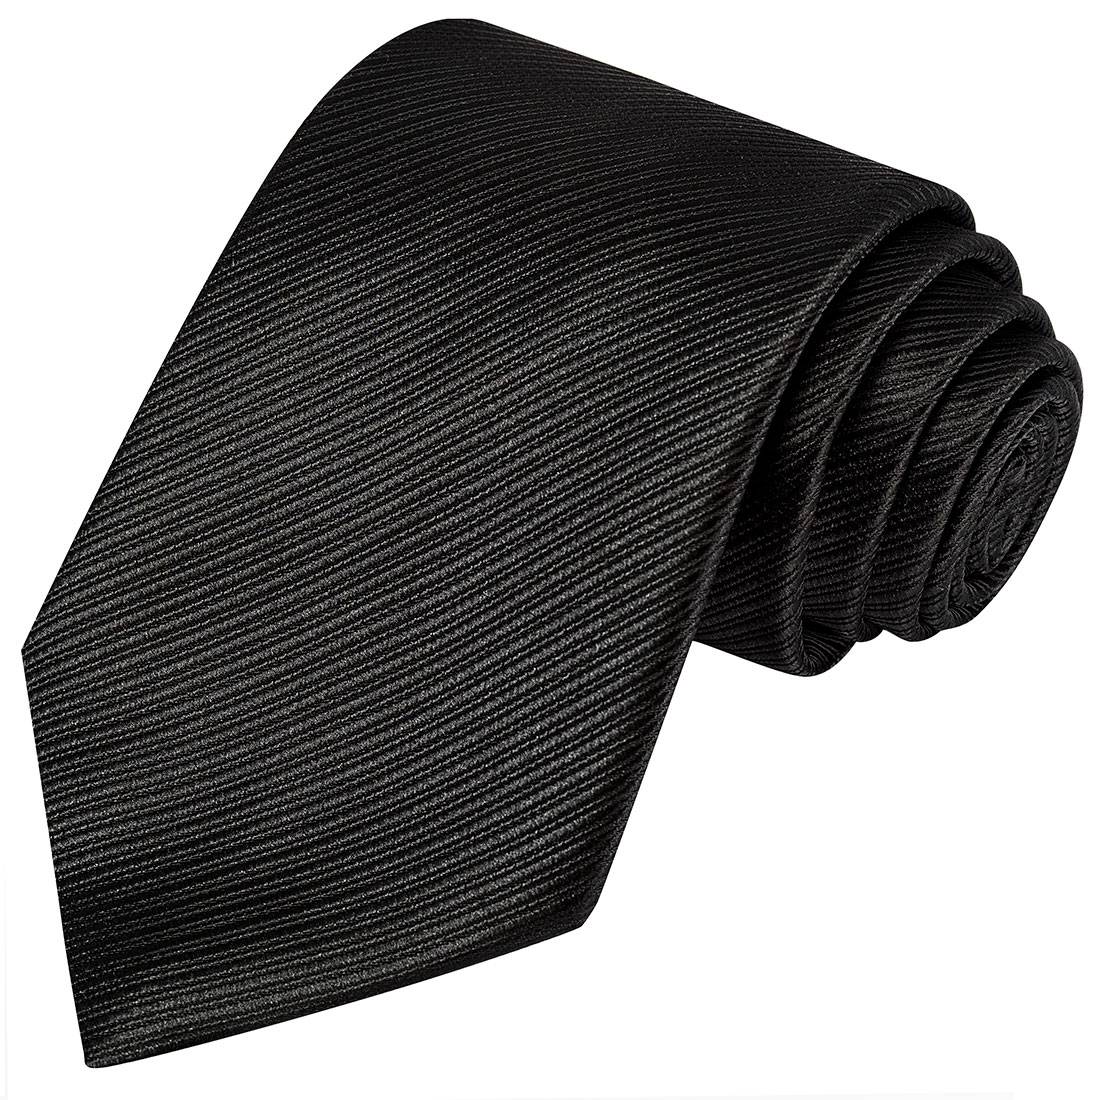 Black Striped Tie - Tie, bowtie, pocket square  | Kissties